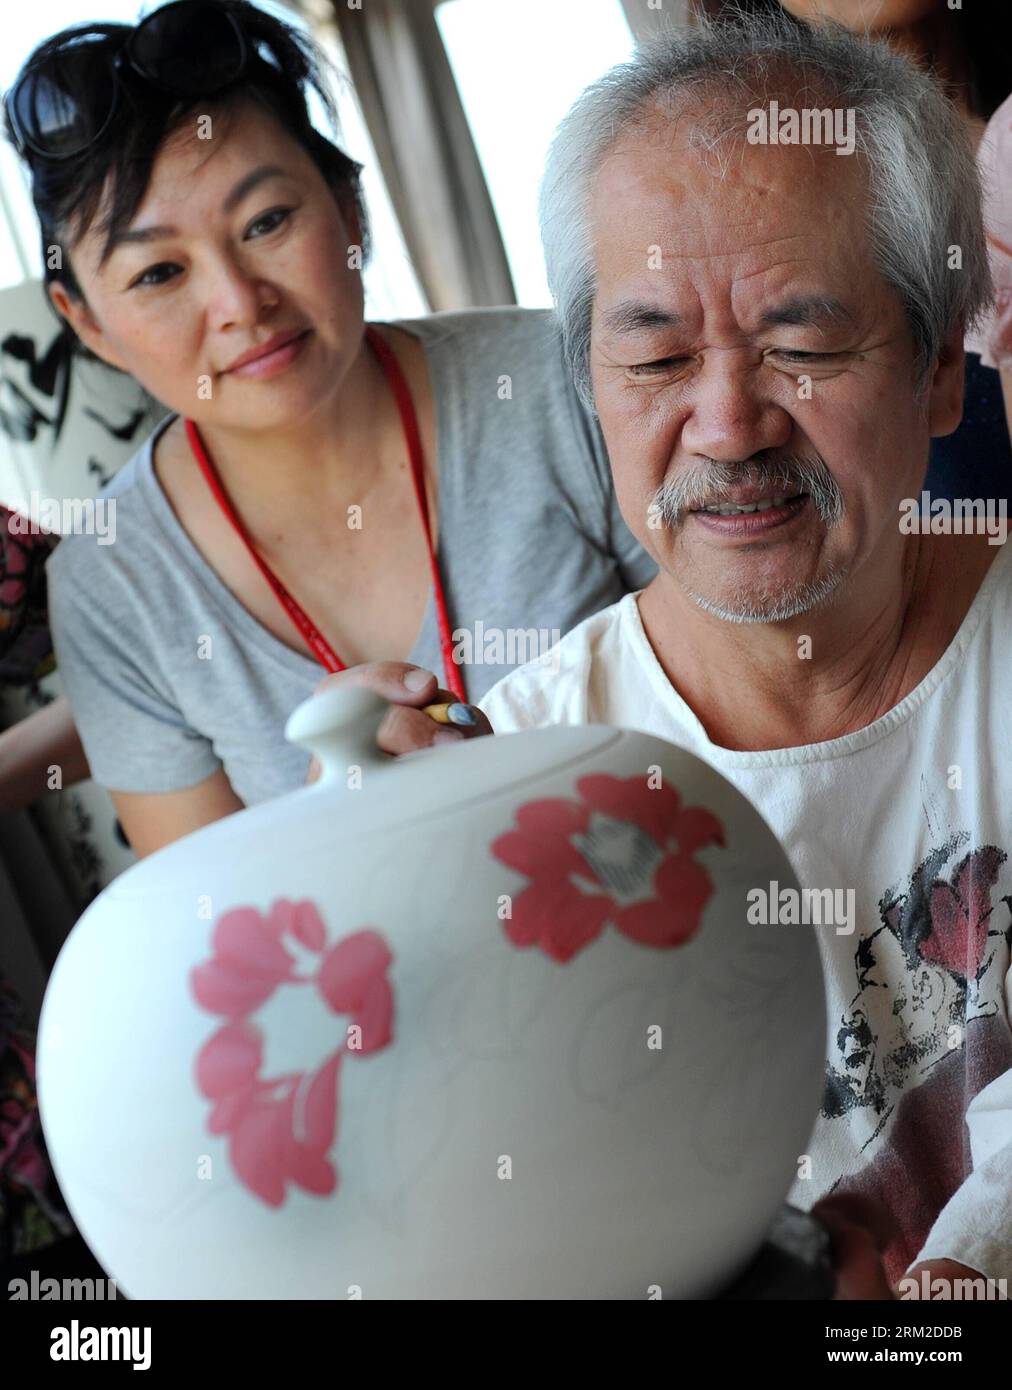 Bildnummer: 59792616 Datum: 08.06.2013 Copyright: Imago/Xinhua (130608) -- TAIPEI, 8 de junio de 2013 (Xinhua) -- Un visitante aprende la técnica de la pintura del artista taiwanés Chen Shi Hou (R) en la ciudad de Yingge de la ciudad de Xinbei en el sureste de China s Taiwán, 8 de junio de 2013. Más de 100 artistas han establecido talleres en Yingge, que es famoso por la producción de cerámica, proporcionando oportunidades para que los visitantes experimenten el proceso de fabricación de porcelanas. (Xinhua/Tao Ming) (mp) CHINA-TAIWAN-YINGGE-CERÁMICA (CN) PUBLICATIONxNOTxINxCHN Kultur x0x xsk 2013 hoch 59792616 Fecha 08 06 2013 Copyright Imago XINHUA Tai Foto de stock